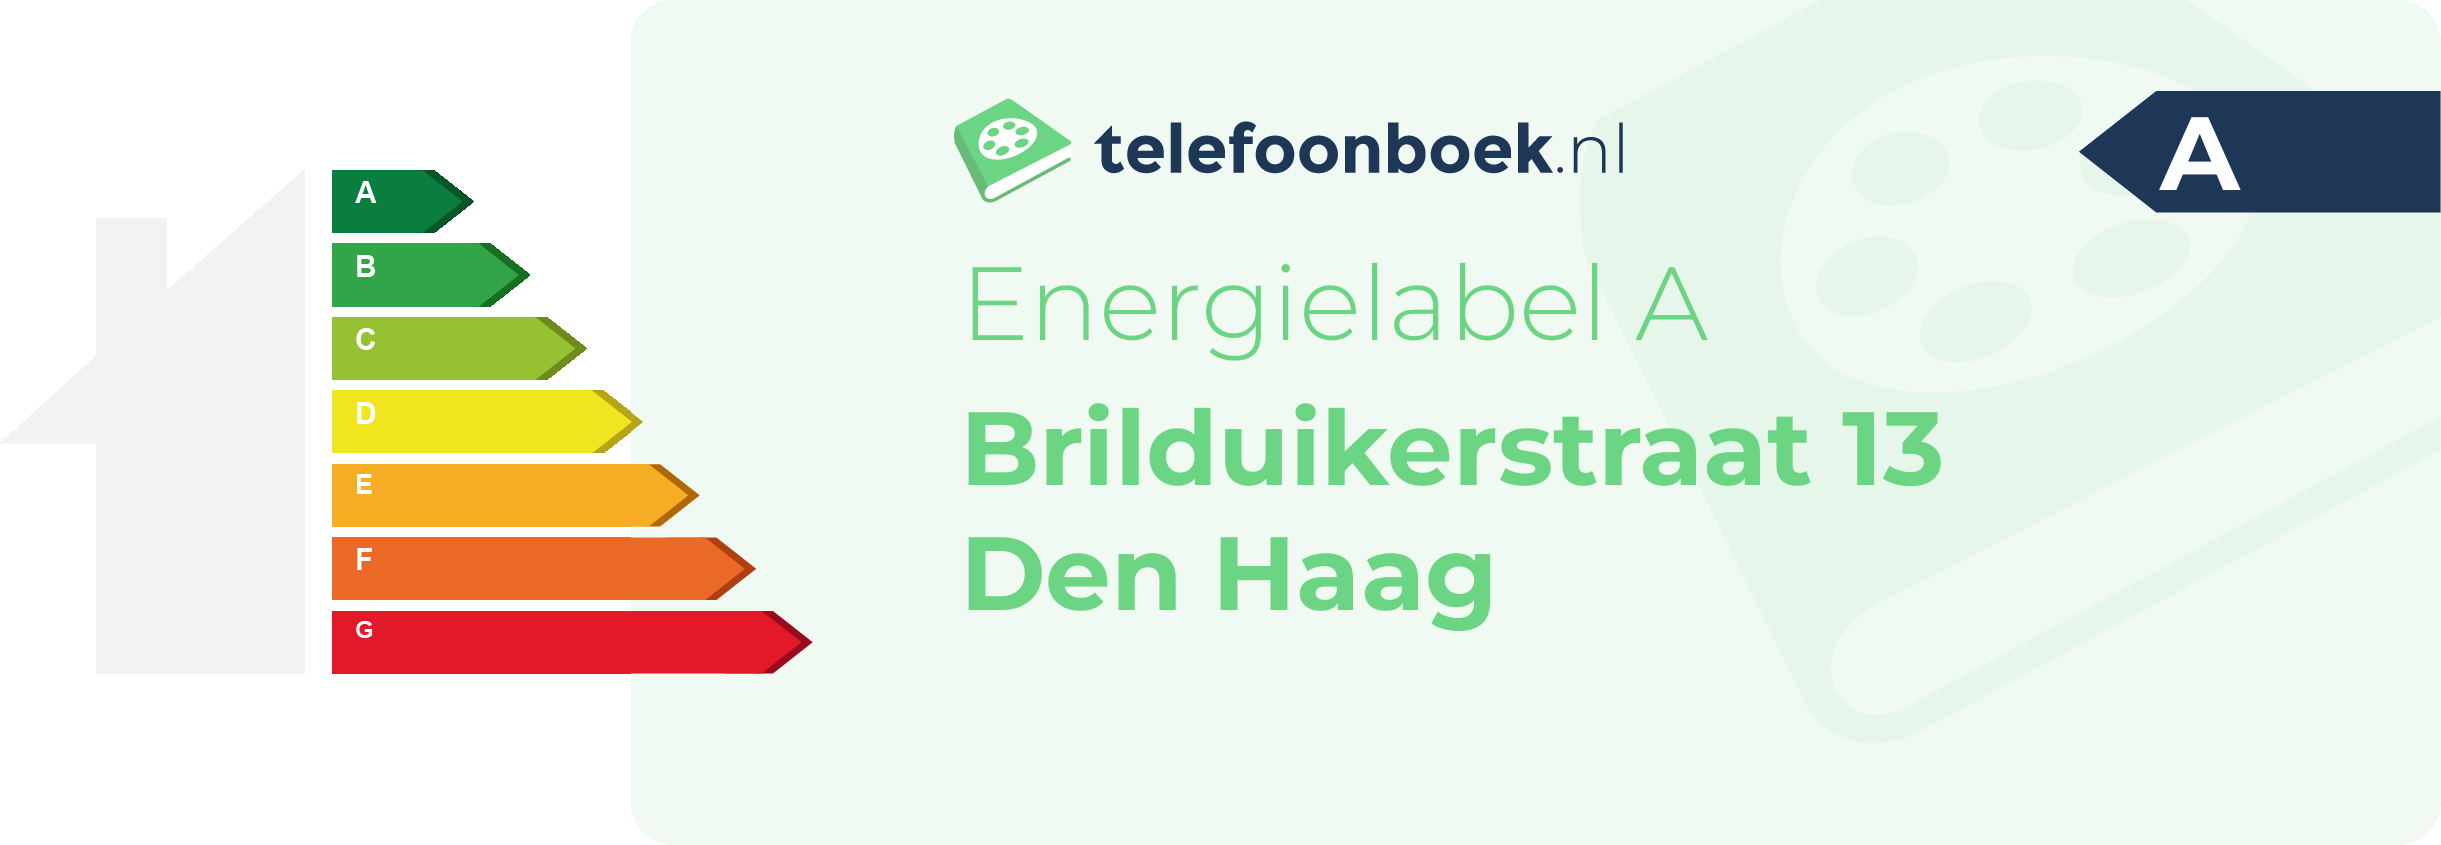 Energielabel Brilduikerstraat 13 Den Haag